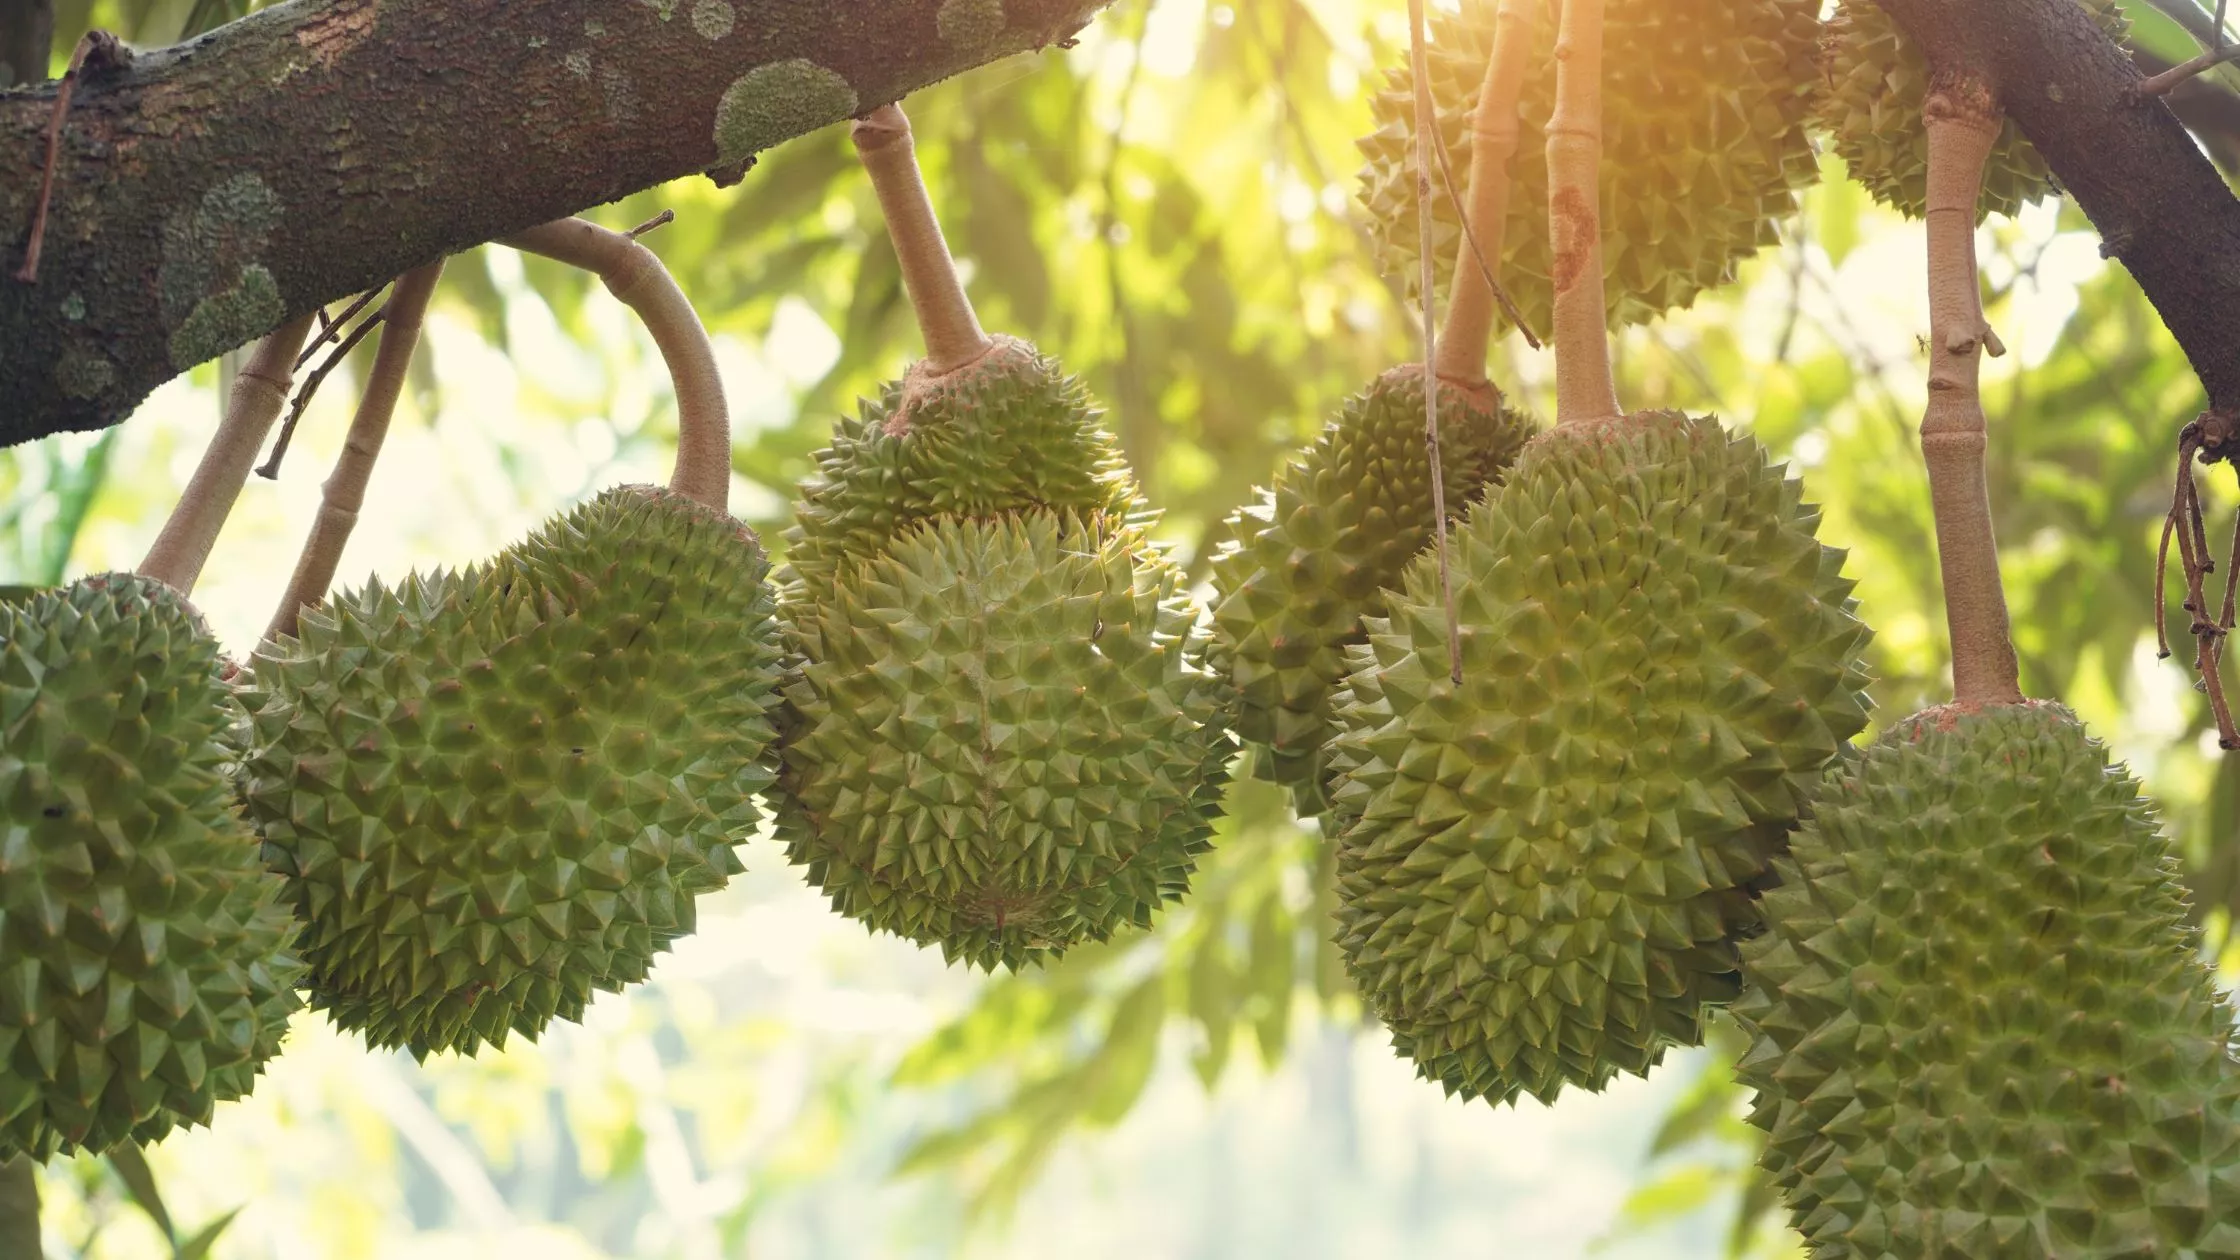 Butter King Durian: The Golden Gem Among Durian Varieties